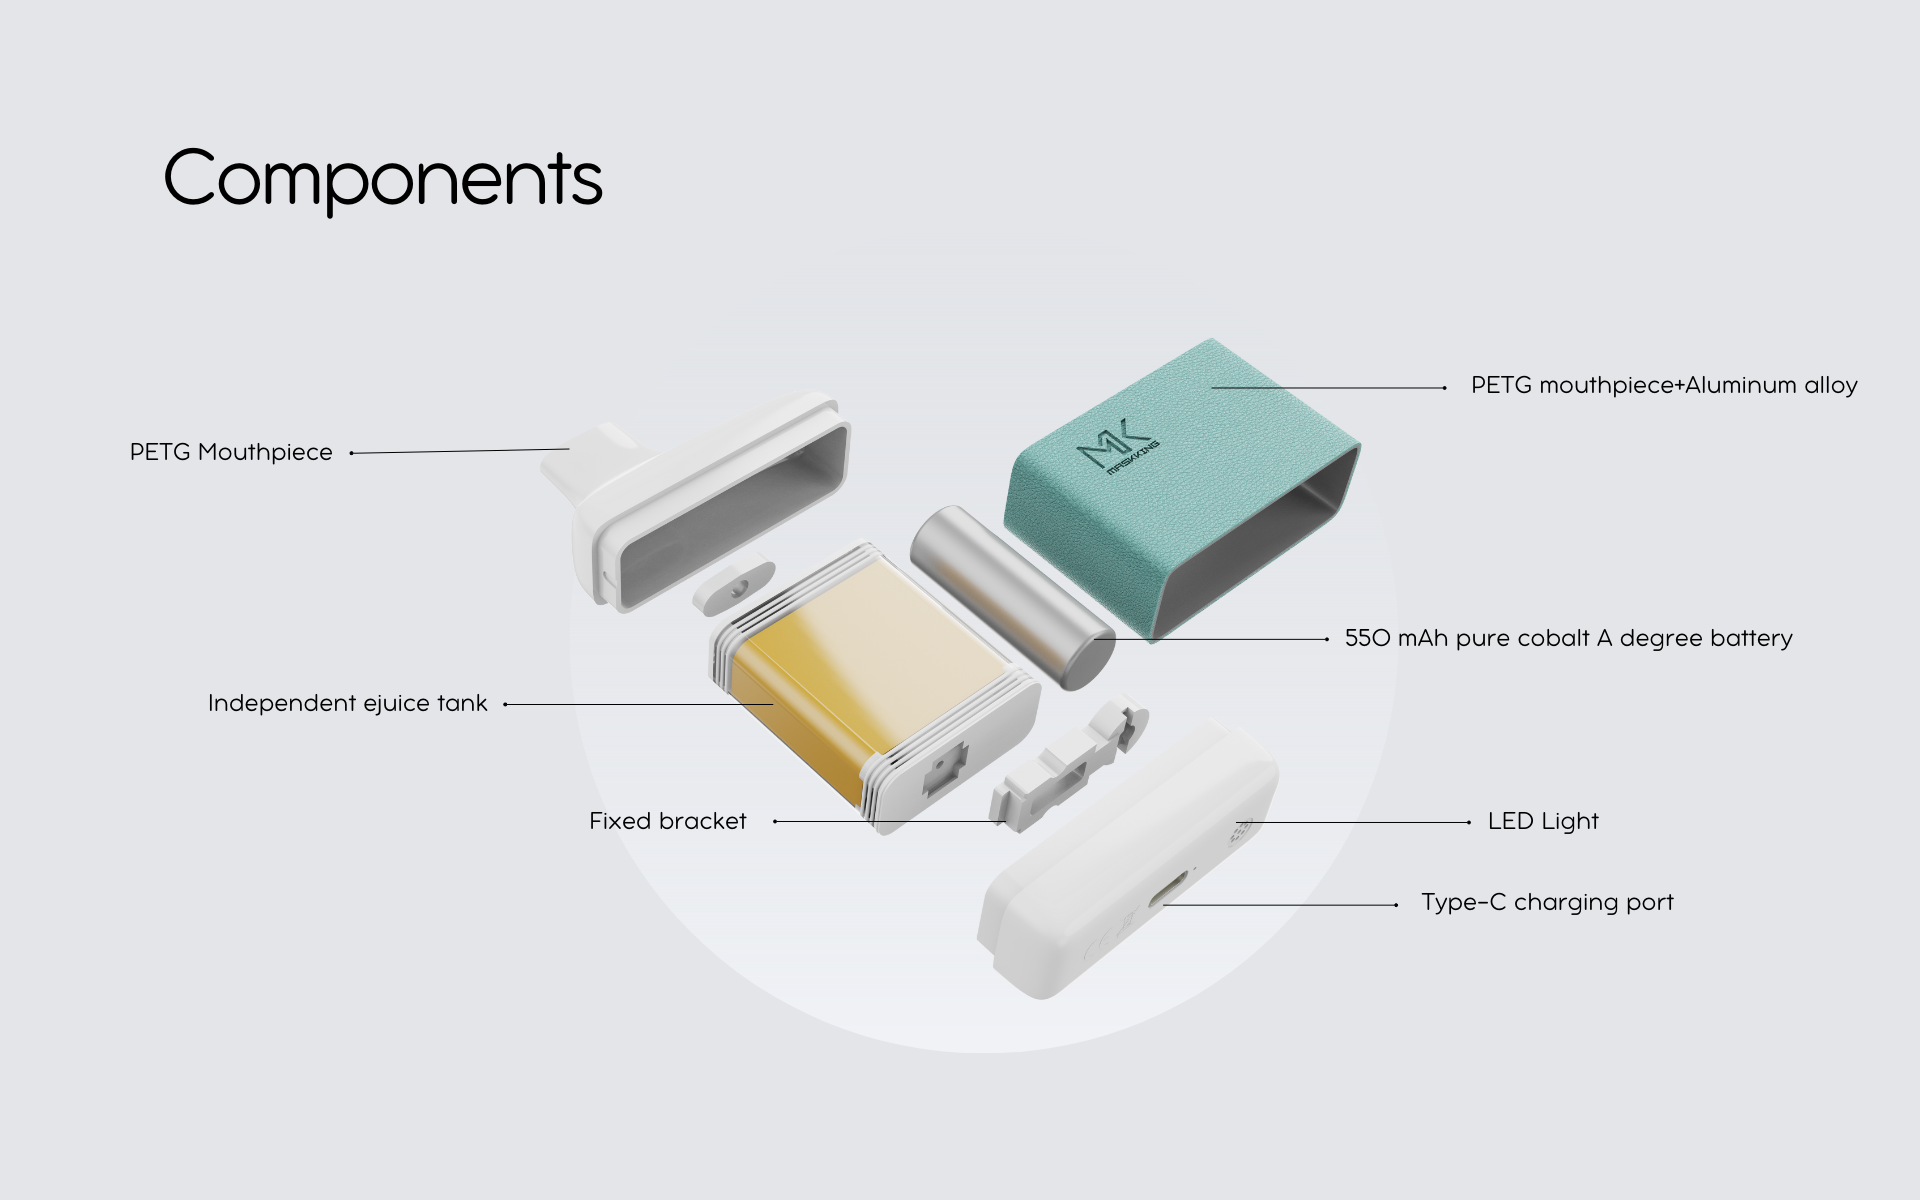 Components of Evo Box